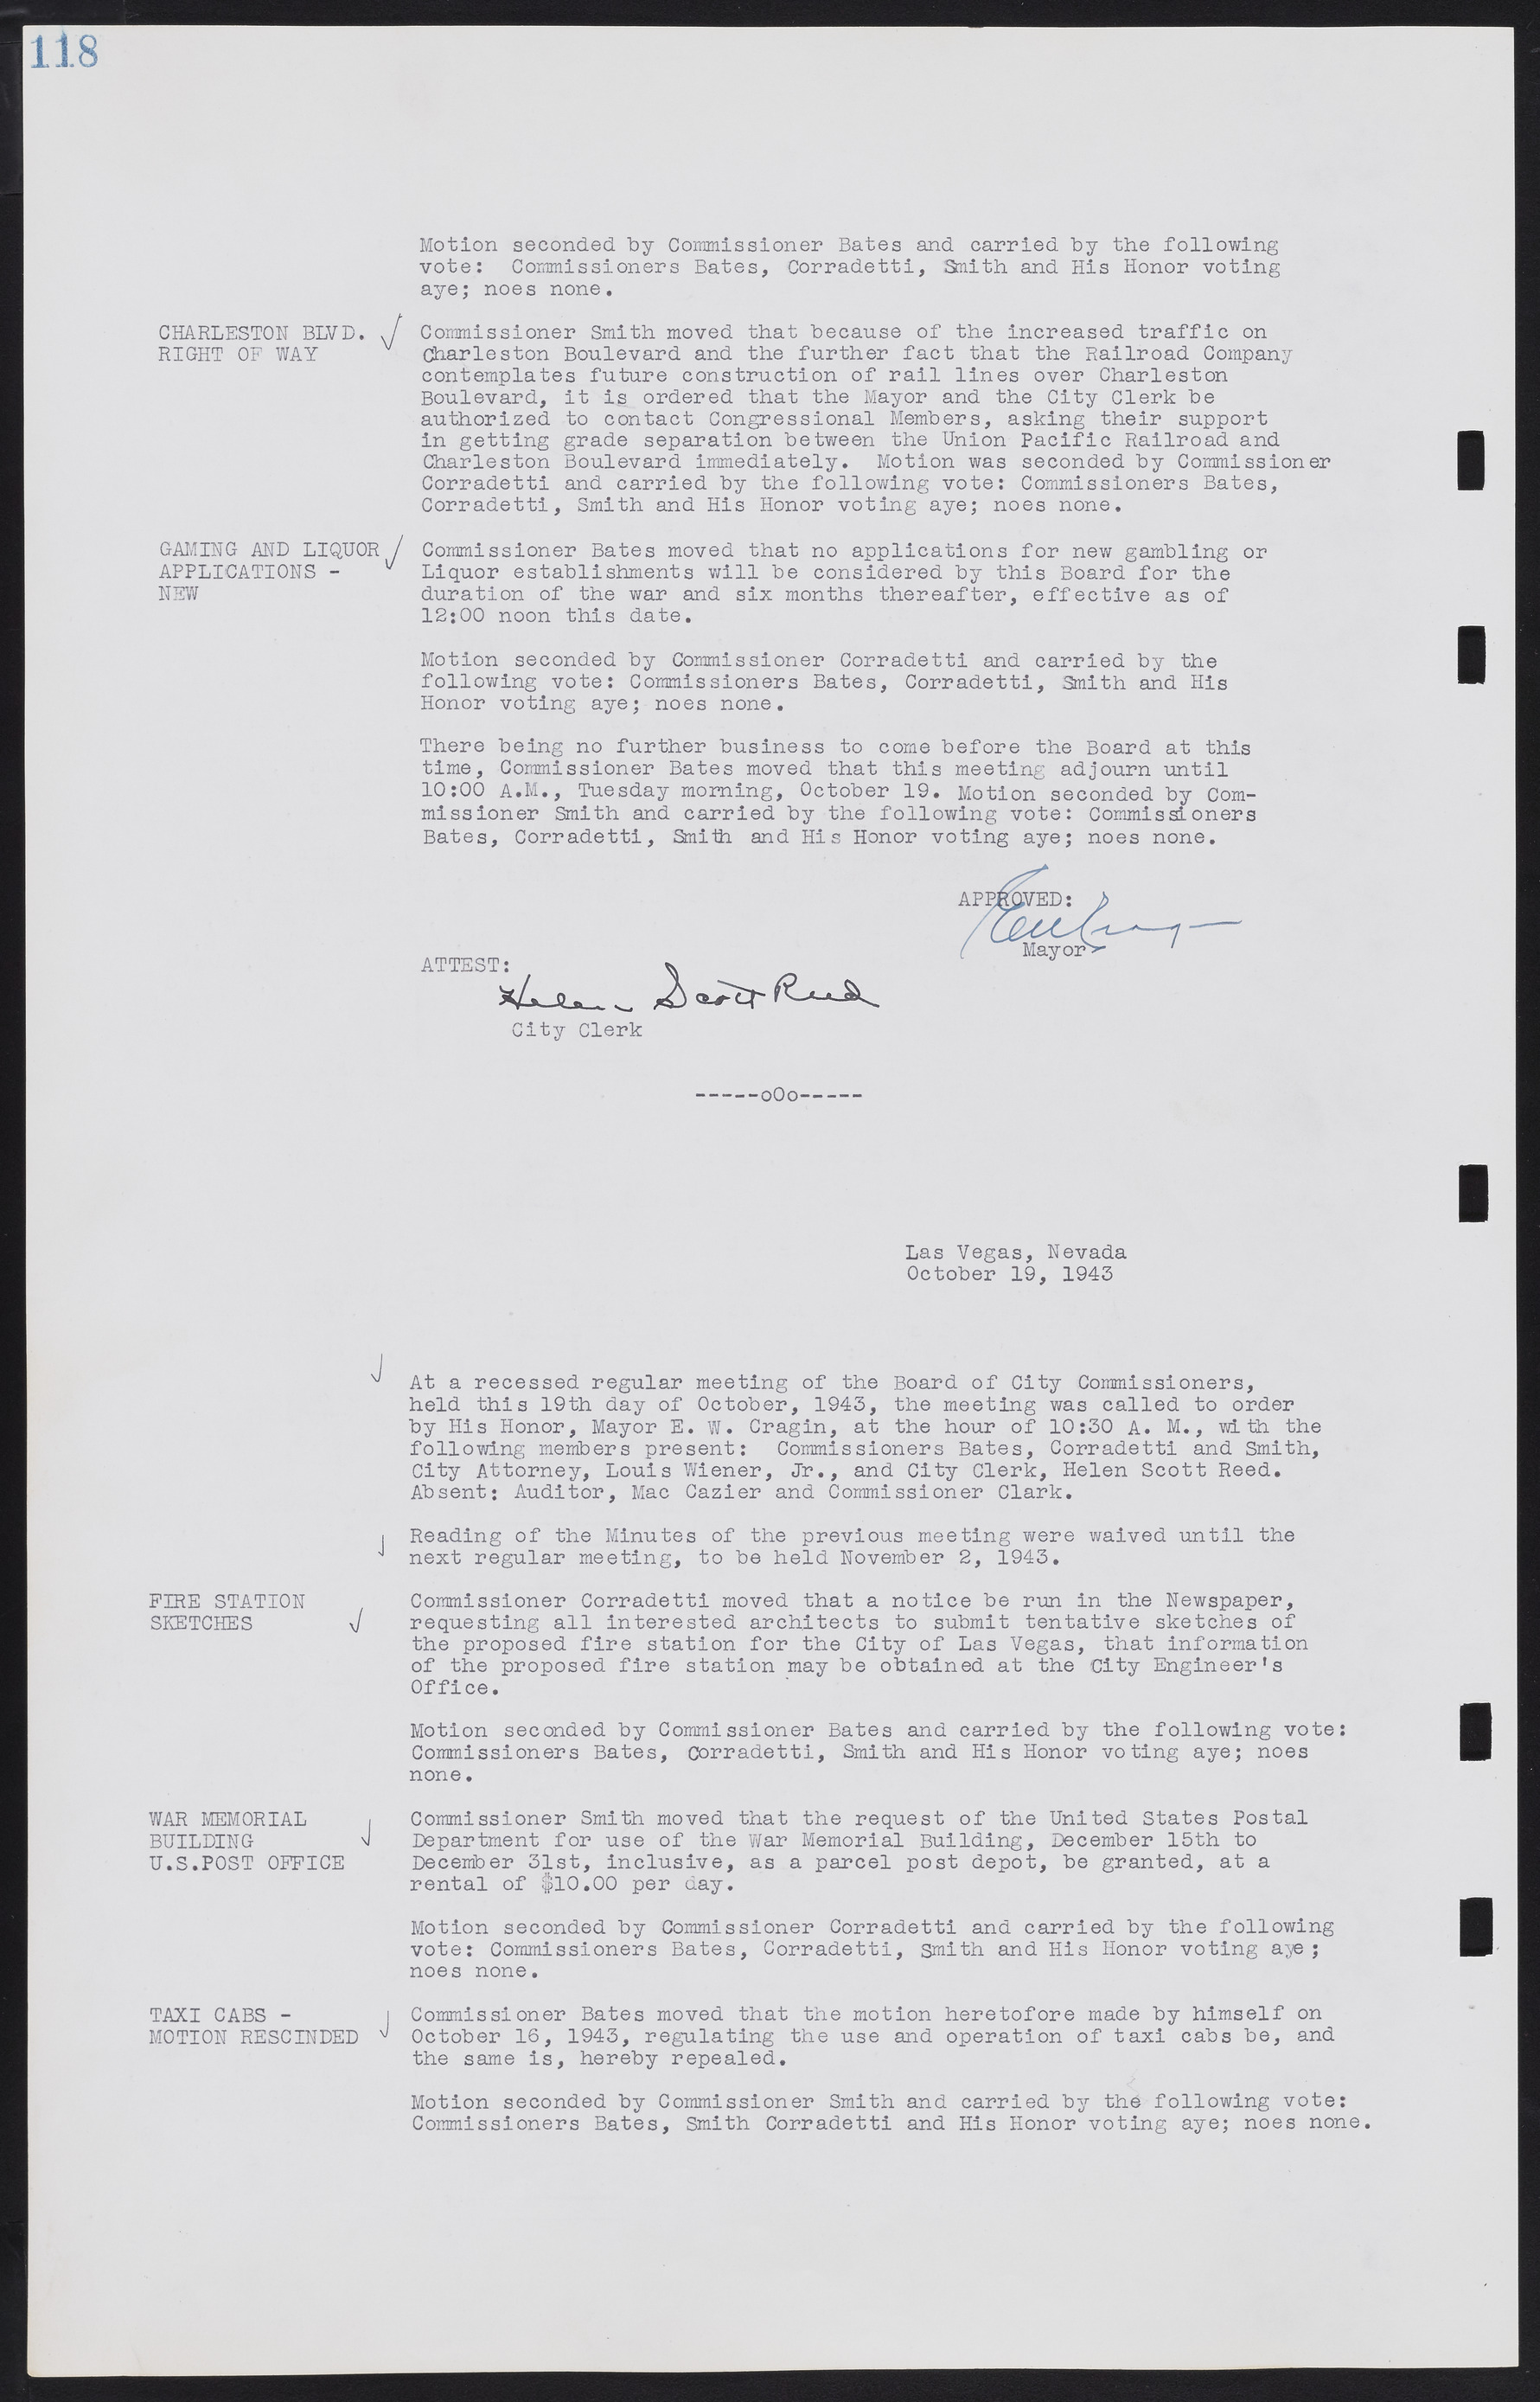 Las Vegas City Commission Minutes, August 11, 1942 to December 30, 1946, lvc000005-132